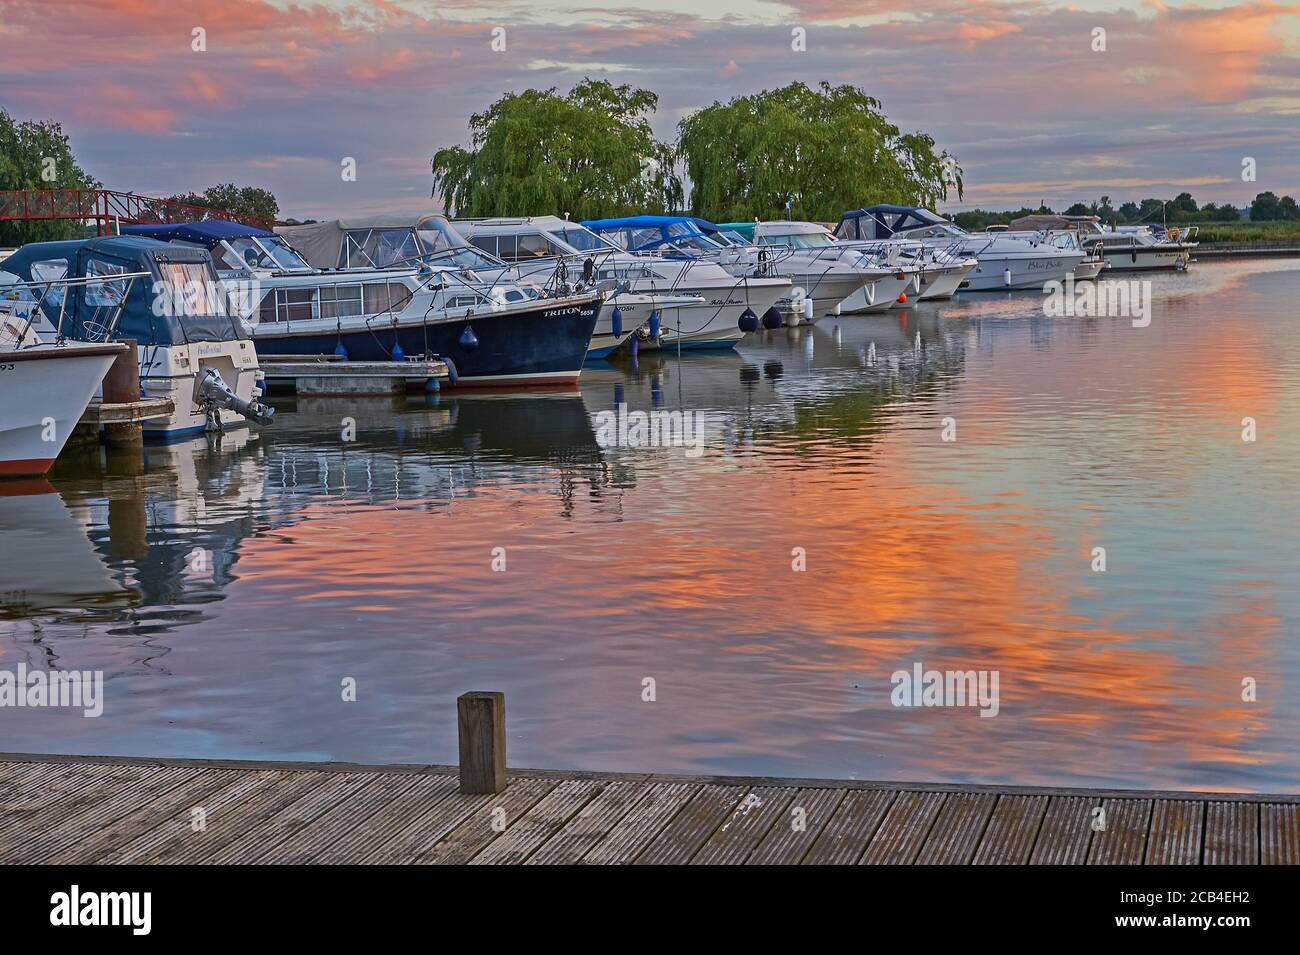 Potter Heigham, Norfolk Broads et bateaux amarrés dans la marina avec un ciel coloré reflété dans l'eau. Banque D'Images